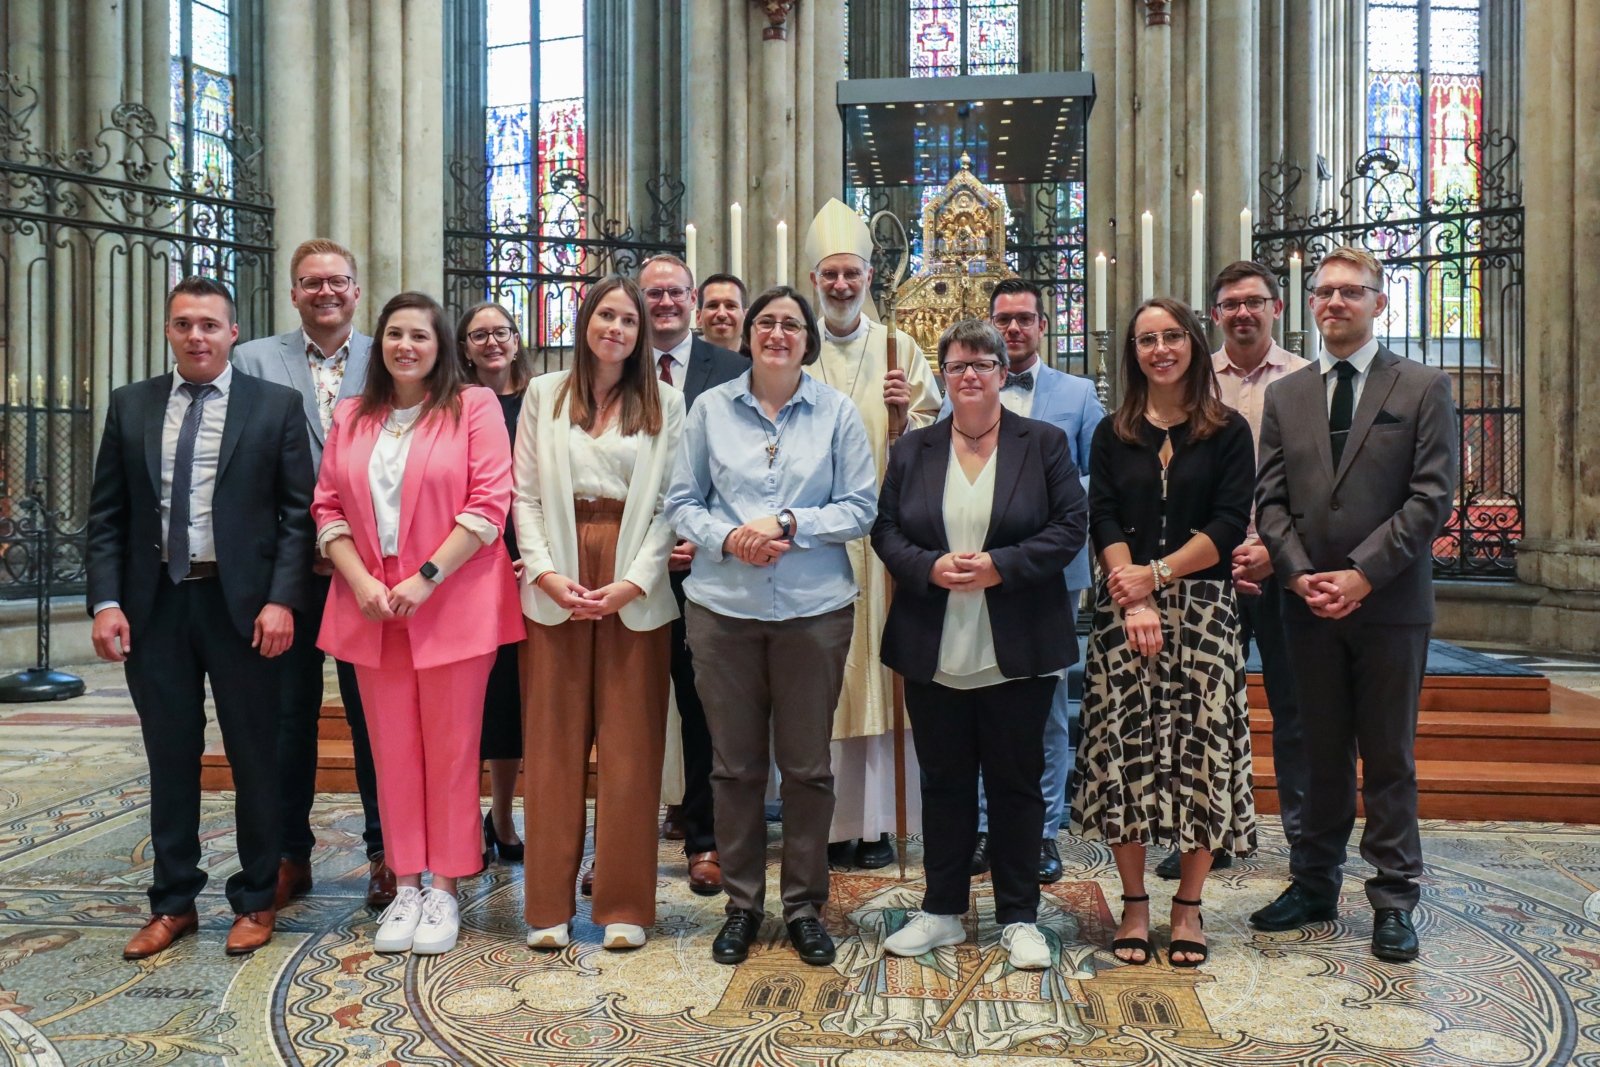 Beauftragungsfeier von zehn neuen Gemeinde- und Pastoralreferentinnen und -referenten im Erzbistum Köln (c) Henning Schoon